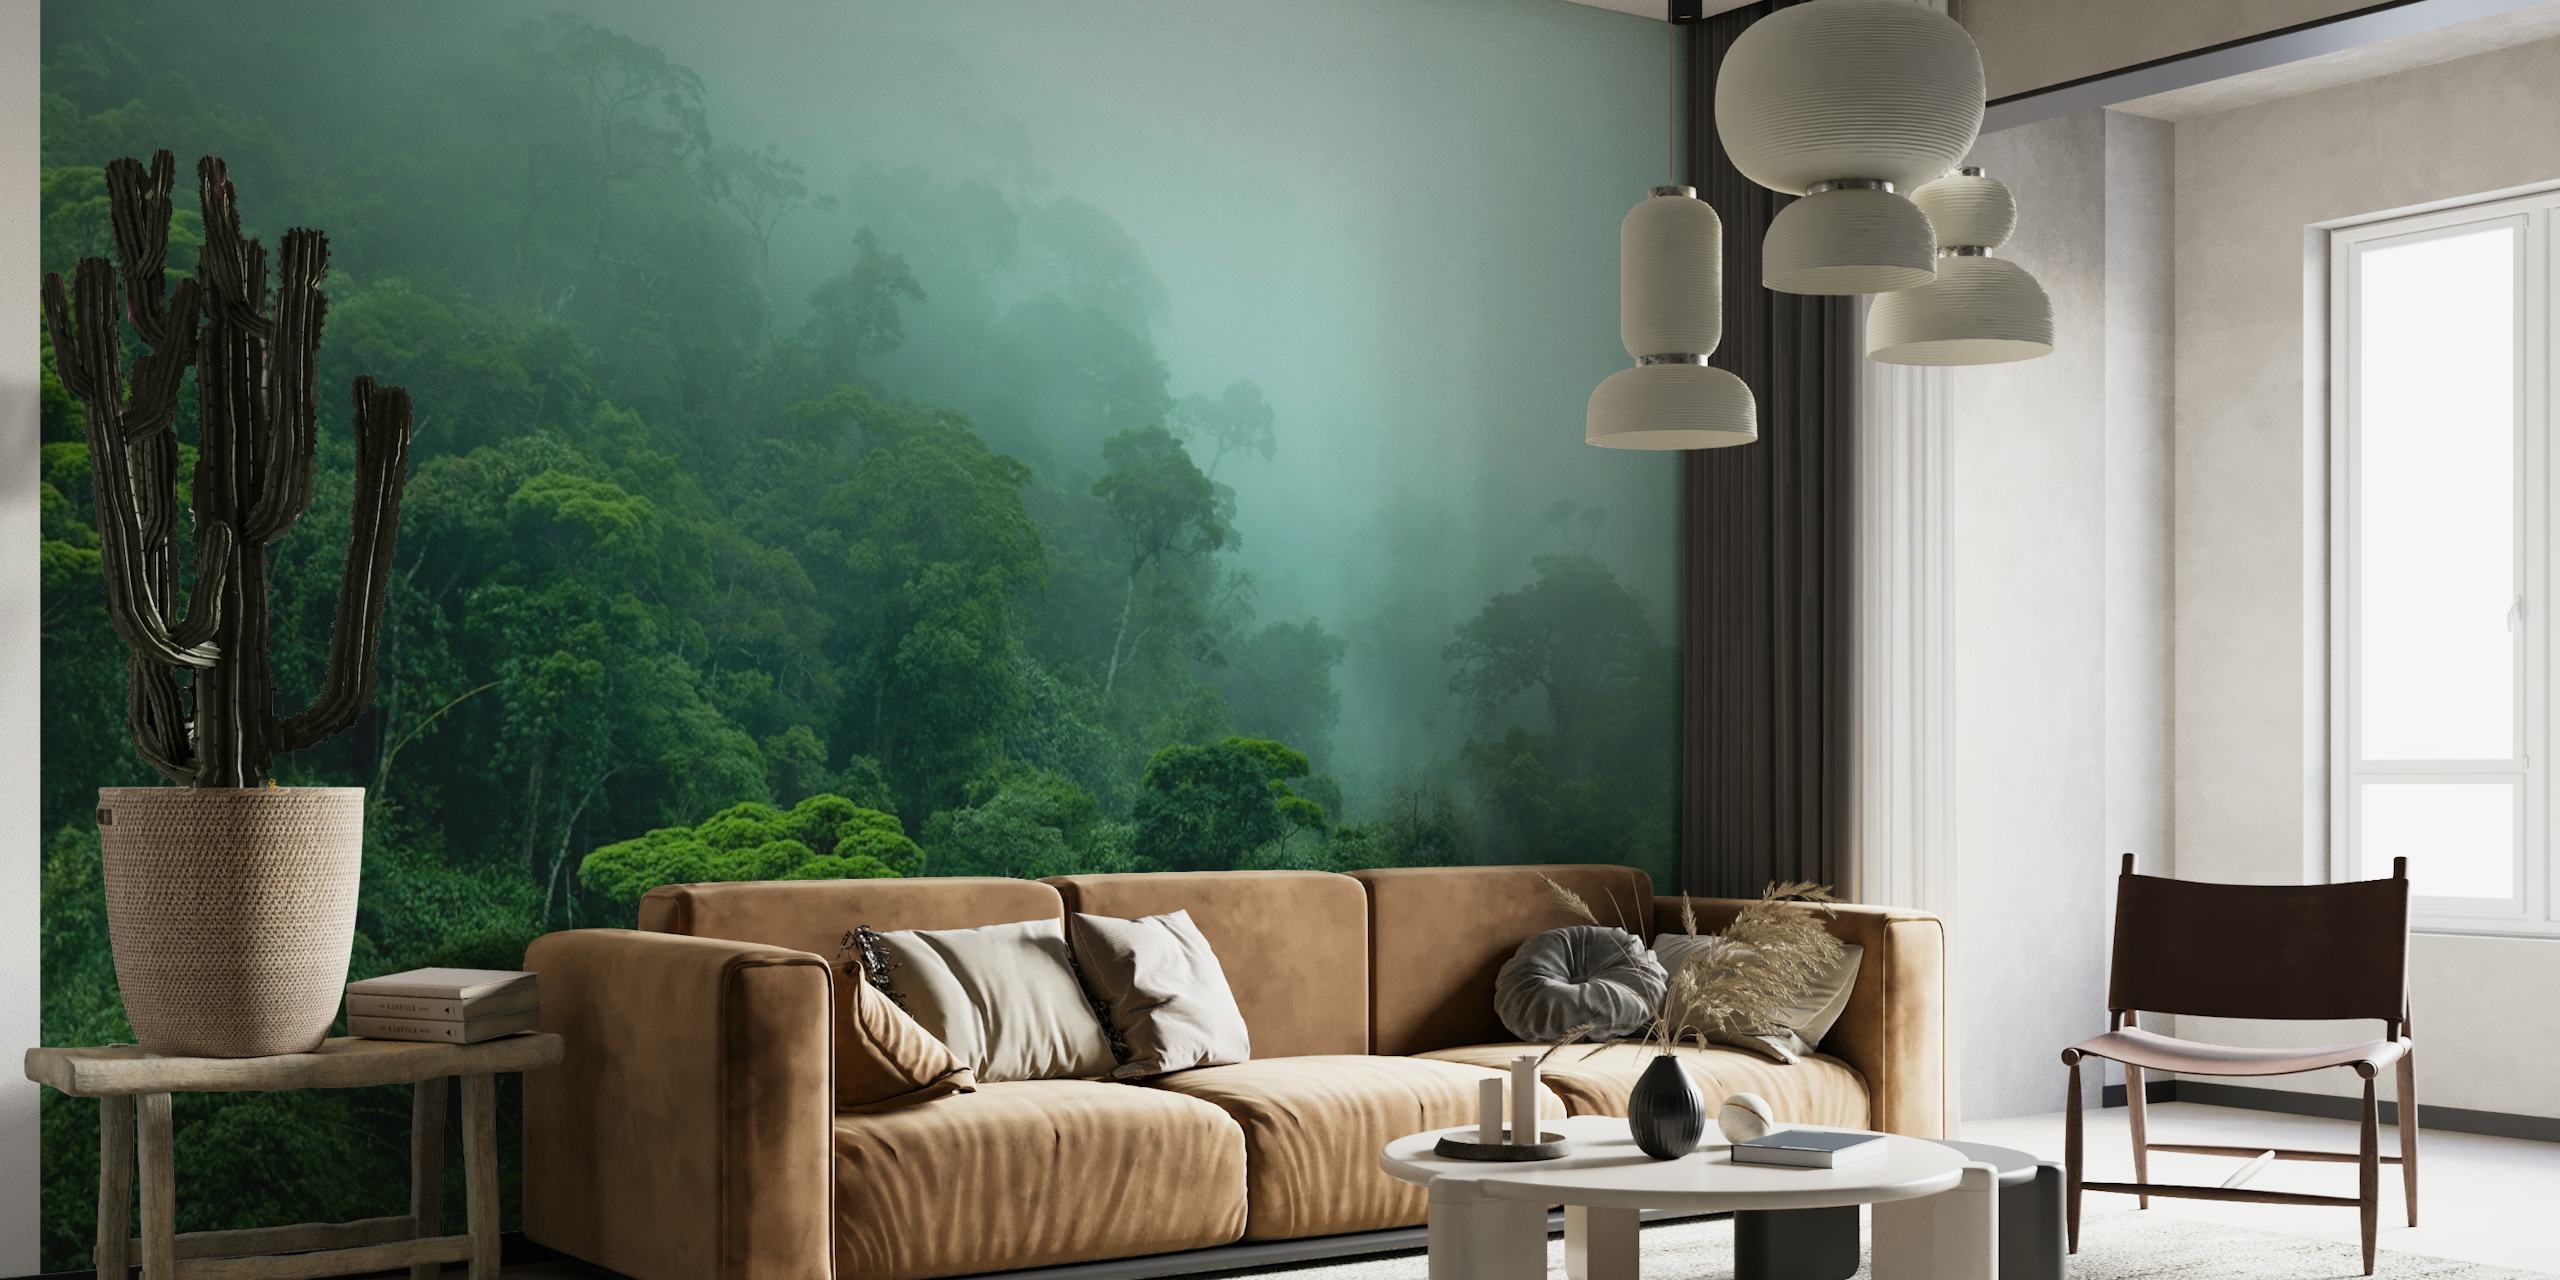 Misty Amazon rainforest wallpaper